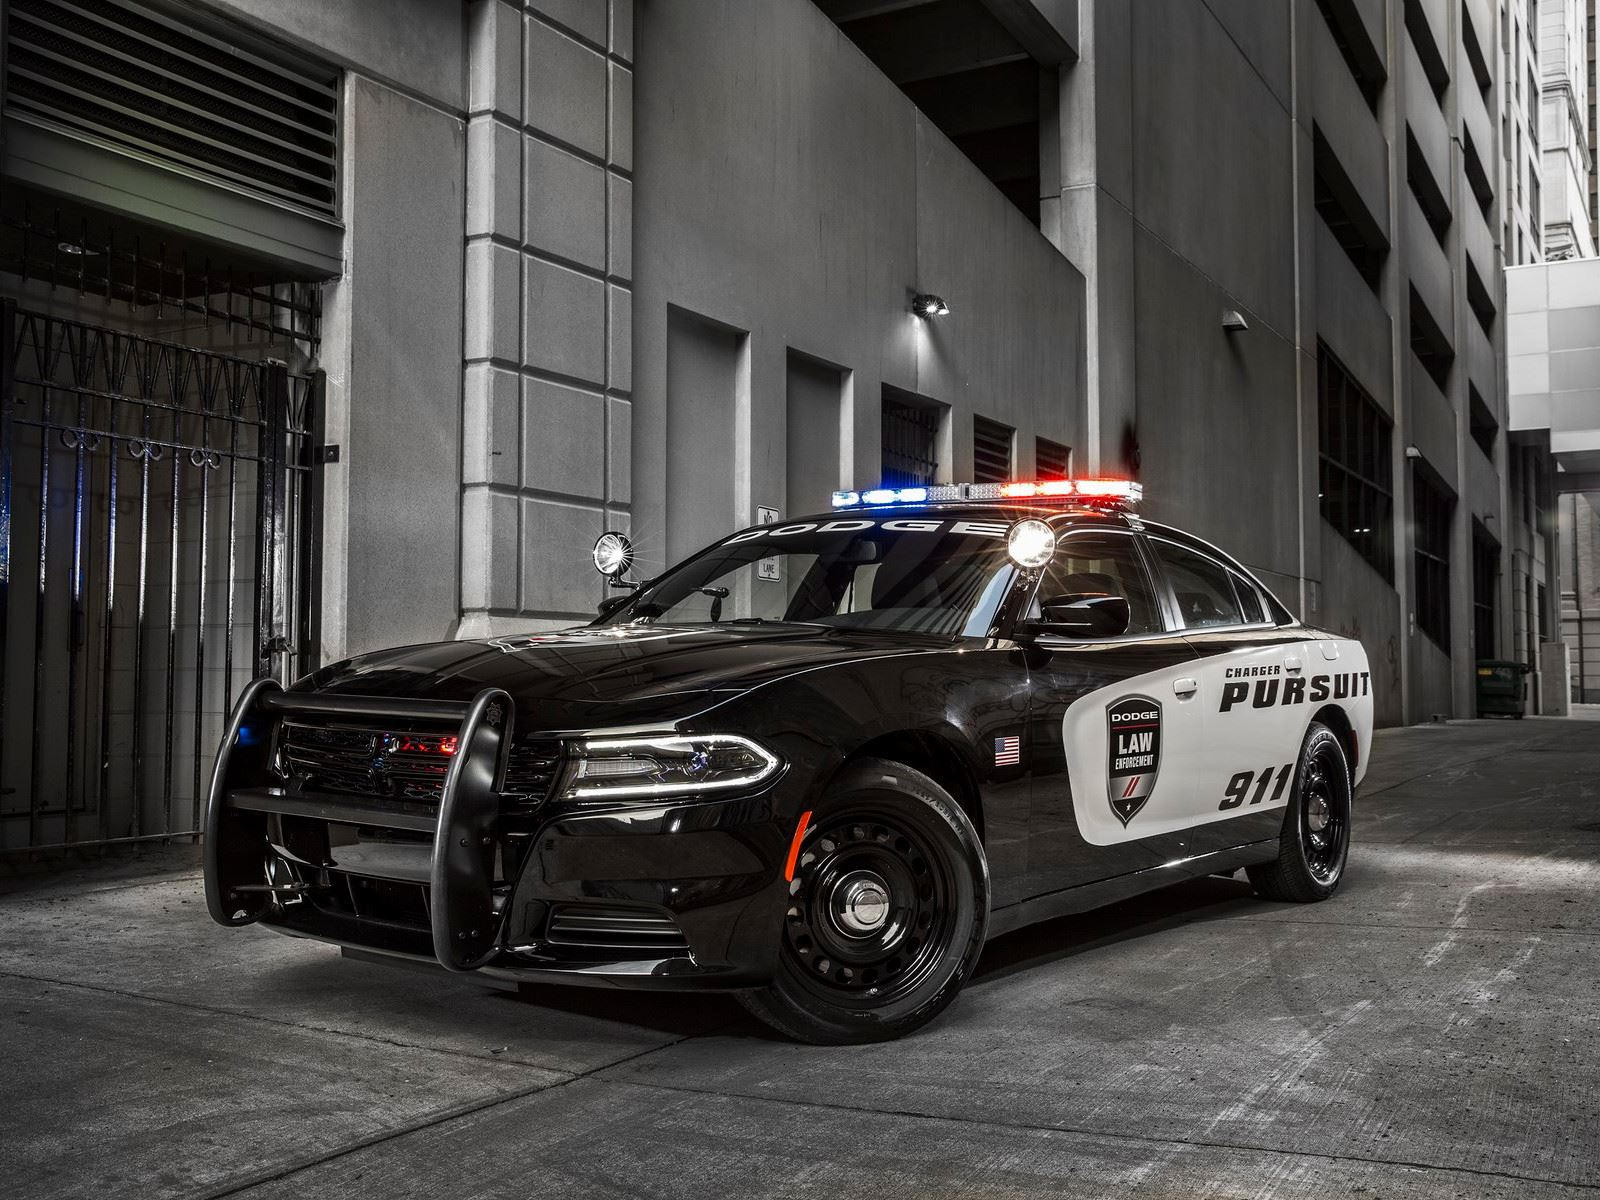 "بالصور" أكثر 10 سيارات شرطة تميزا حول العالم 56